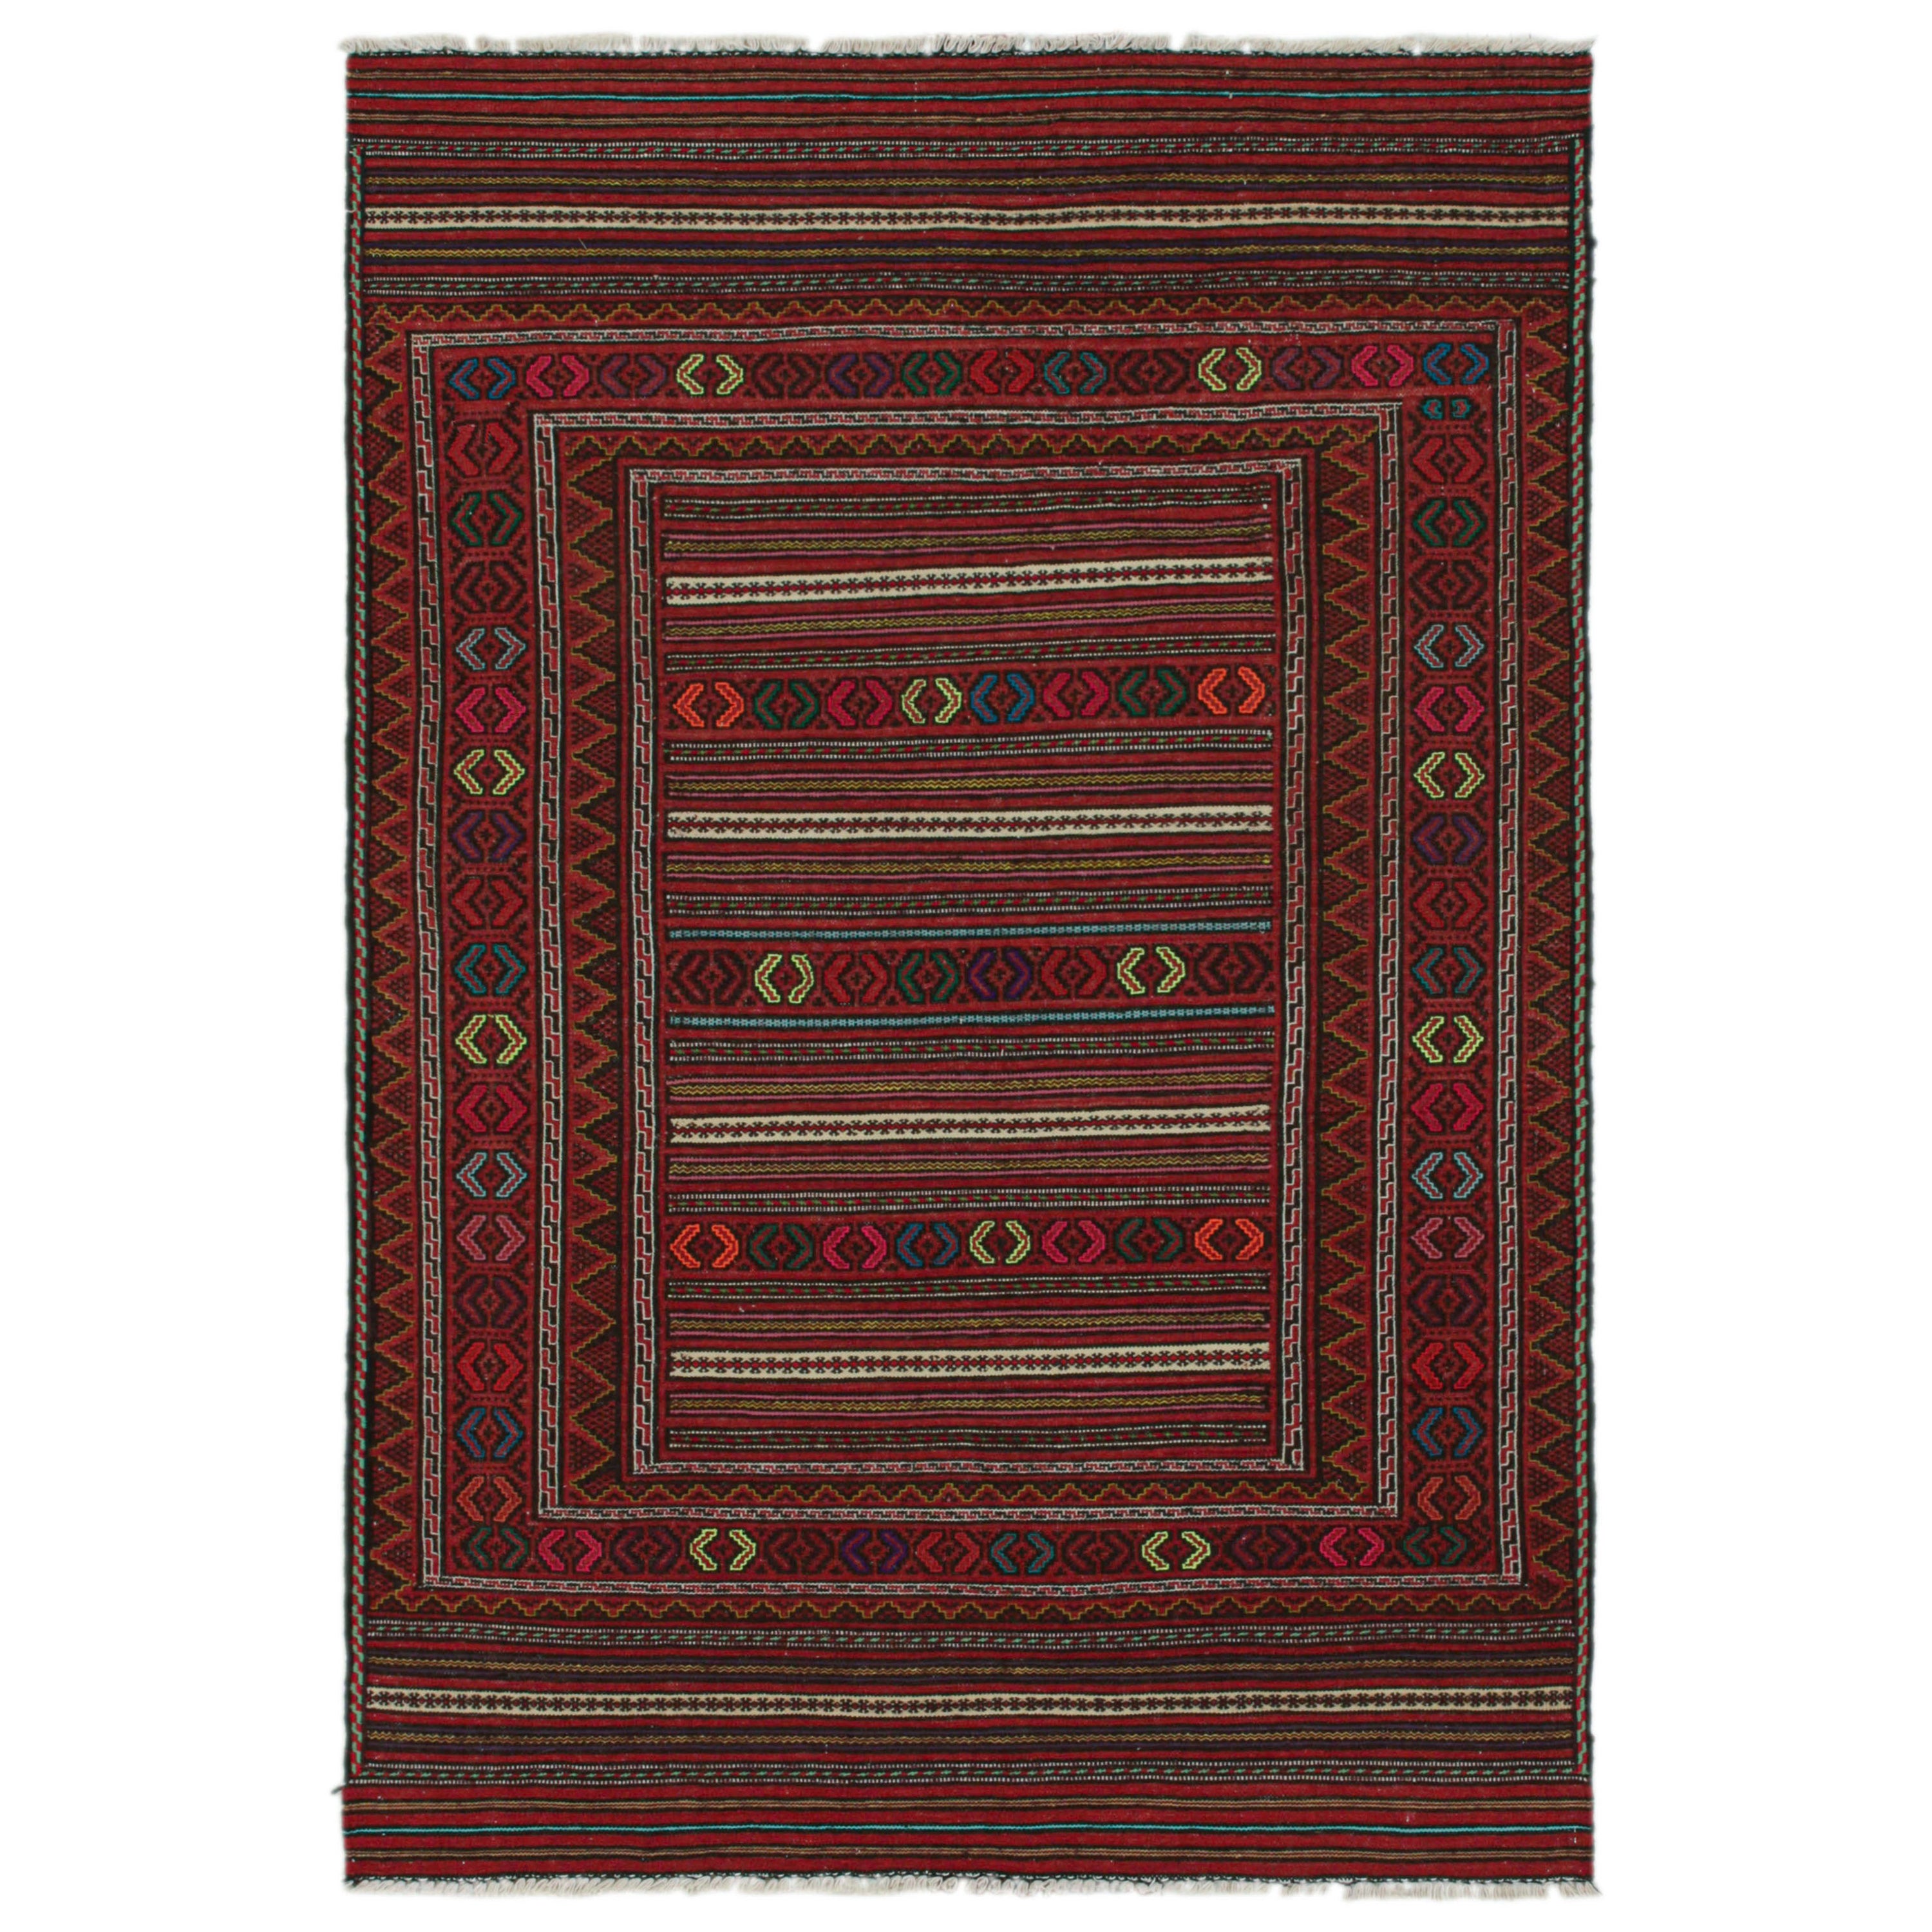 Tapis Kilim Baluch vintage rouge à rayures et motifs tribaux, de Rug & Kilim